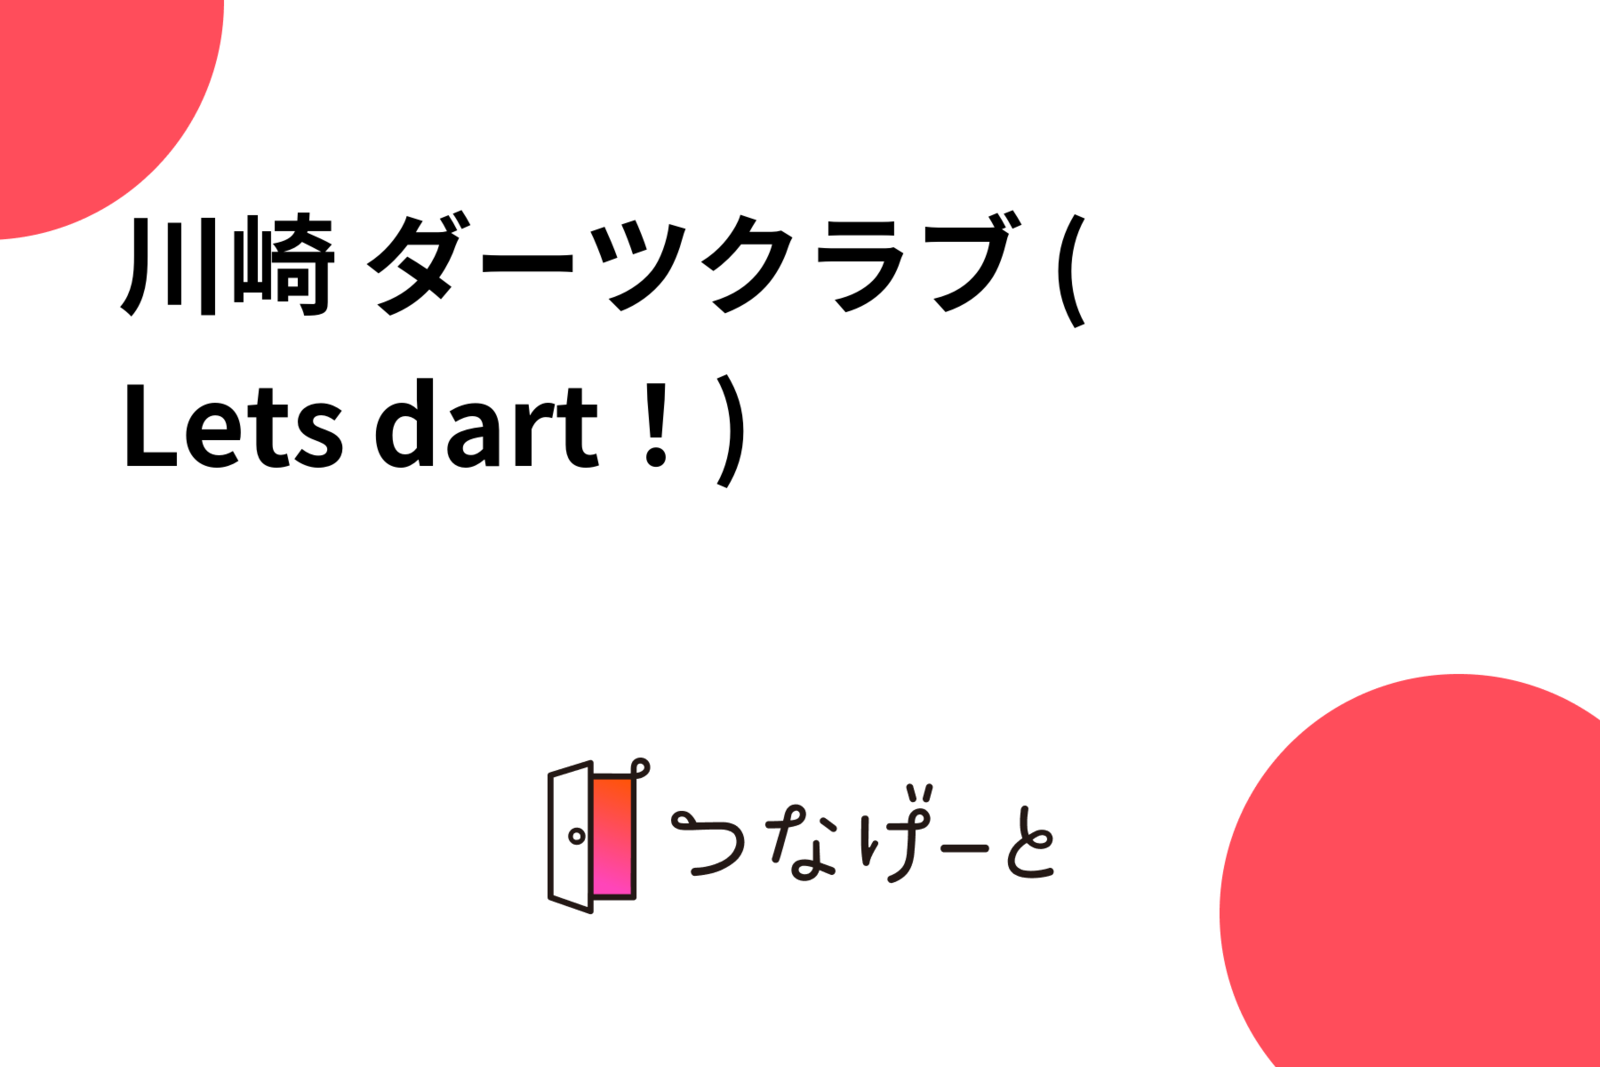 川崎 ダーツクラブ ( Let's dart！)